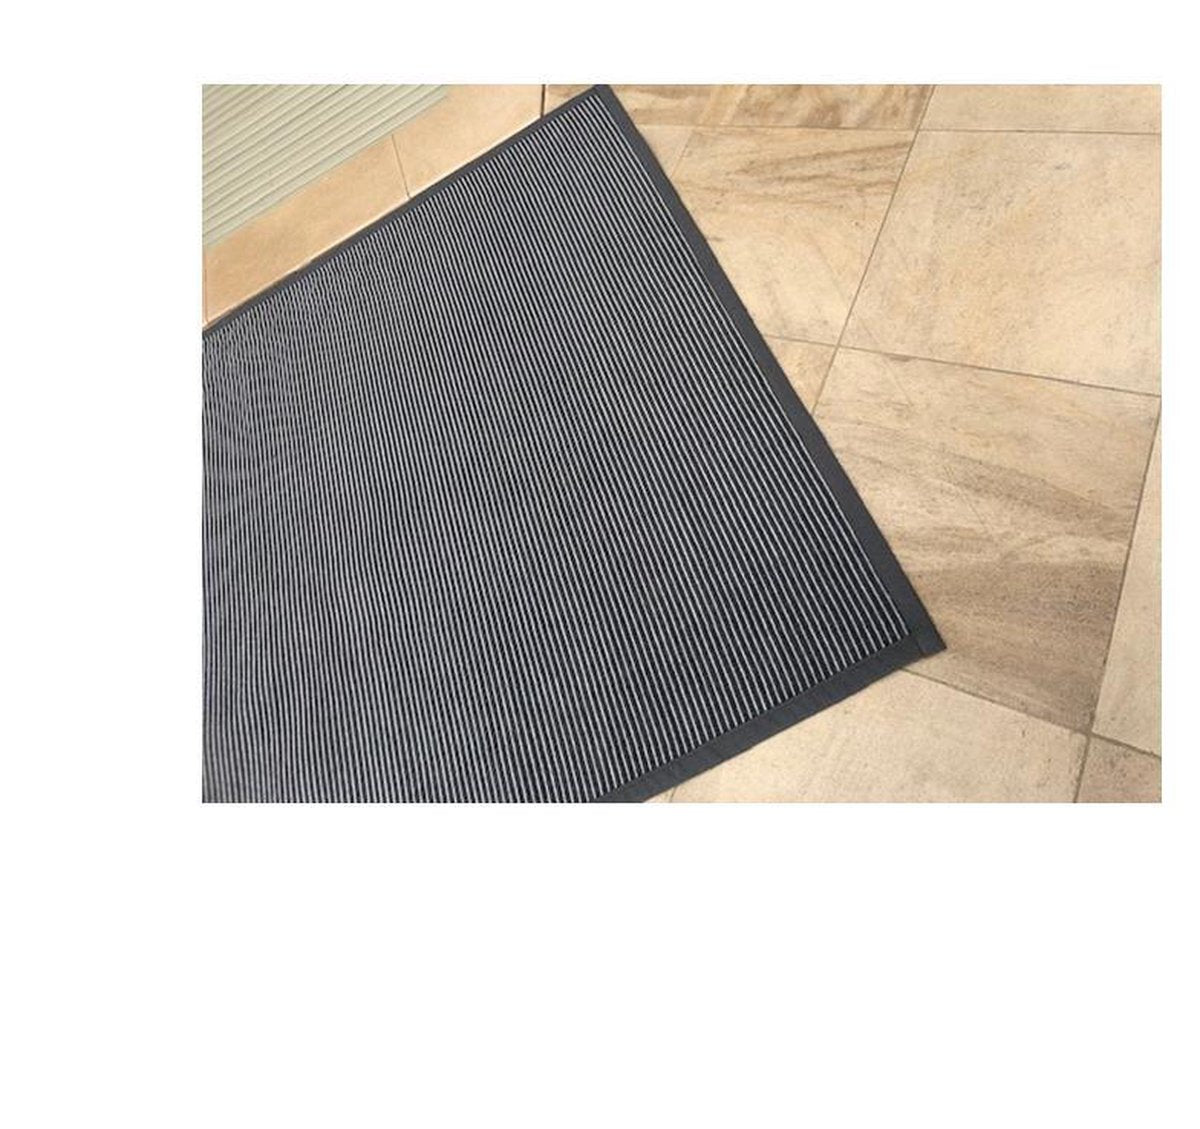 Tapis sisal recto verso - tapis double face - antidérapant gratuit inclus -160/230 - carbone gris foncé - tapis - rayé et chevrons